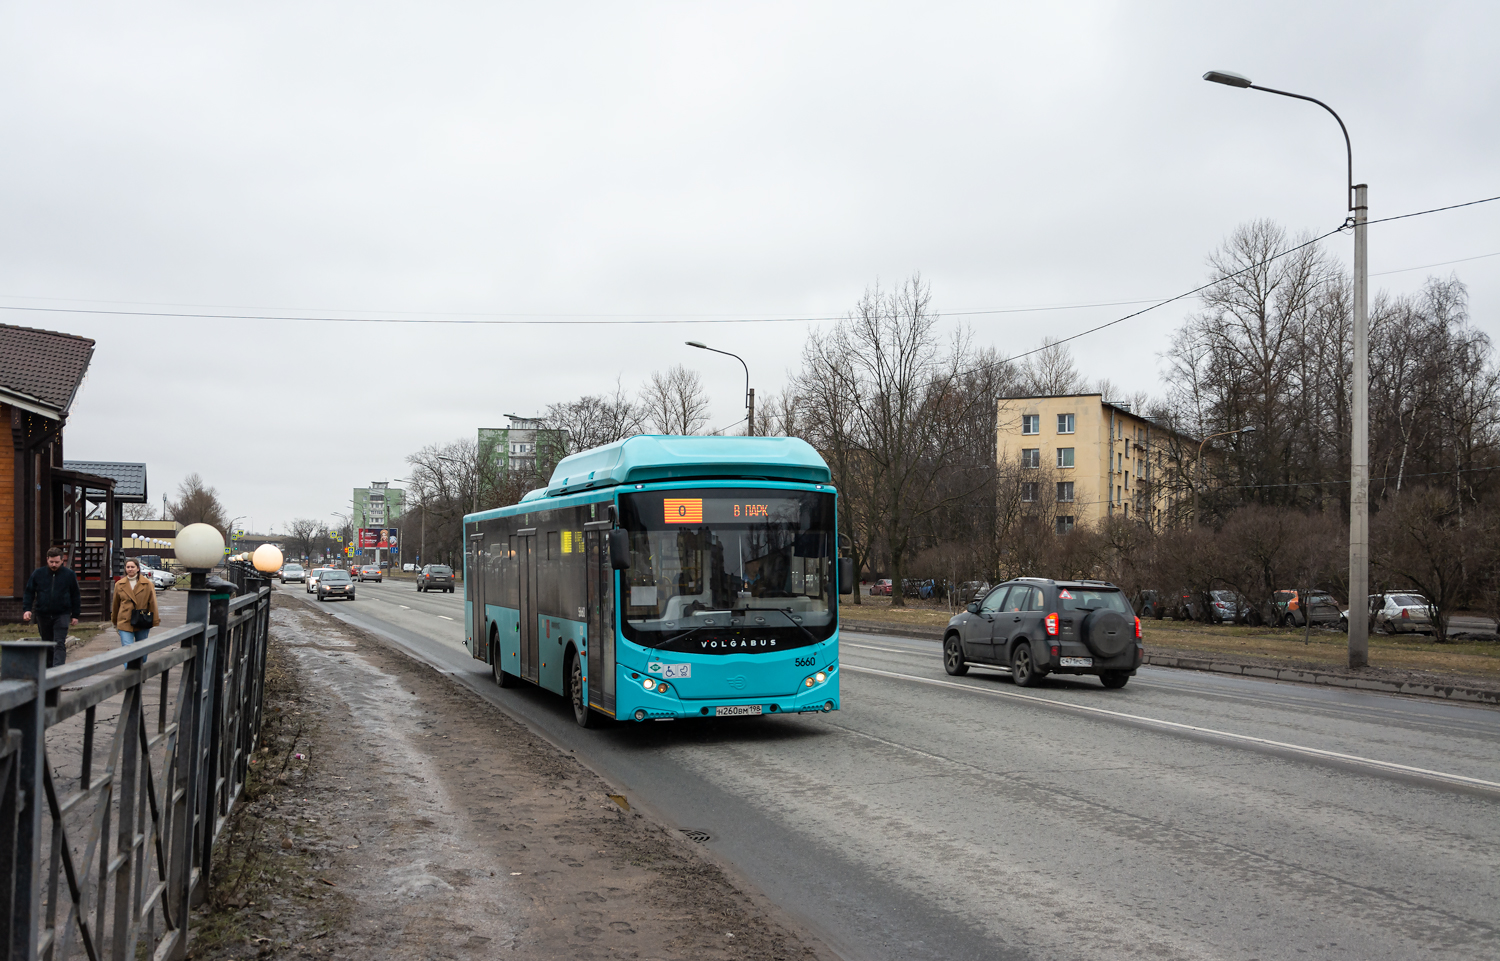 Petersburg, Volgabus-5270.G4 (CNG) # 5660